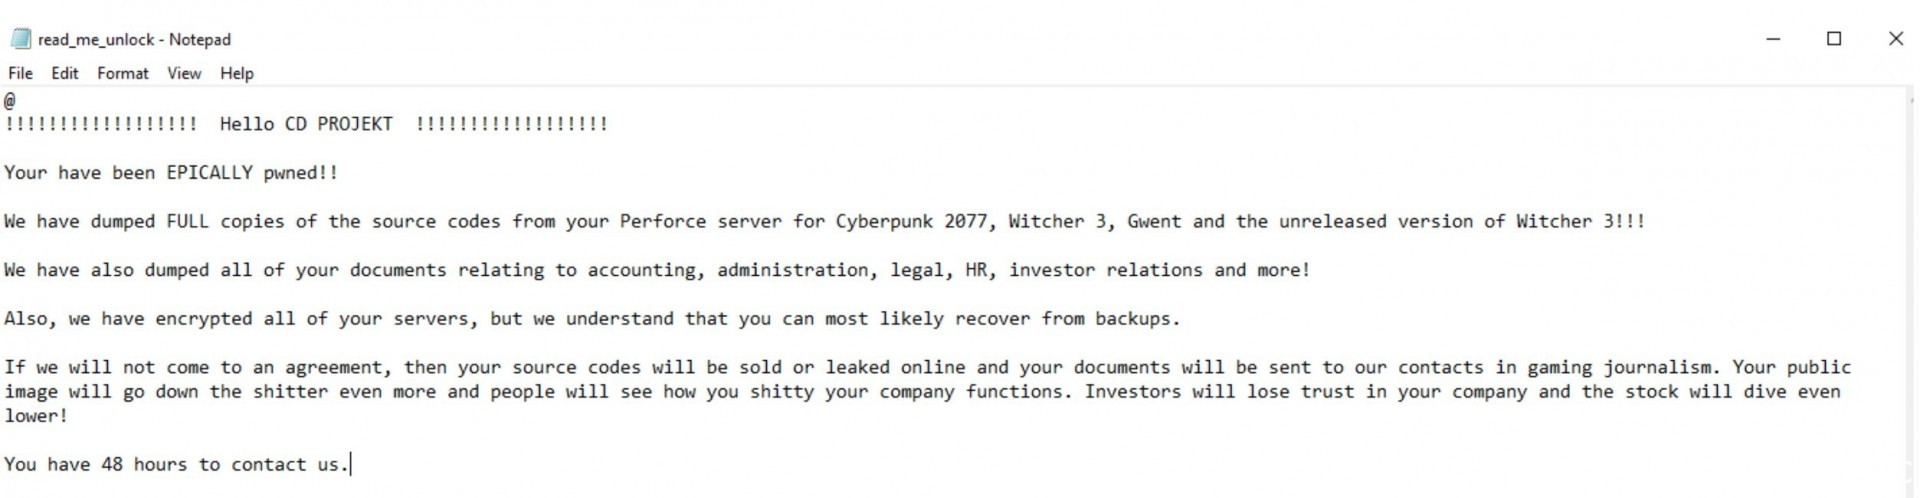 CD Projekt RED 內部網路遭駭客入侵 遊戲原始碼與機密資料外洩